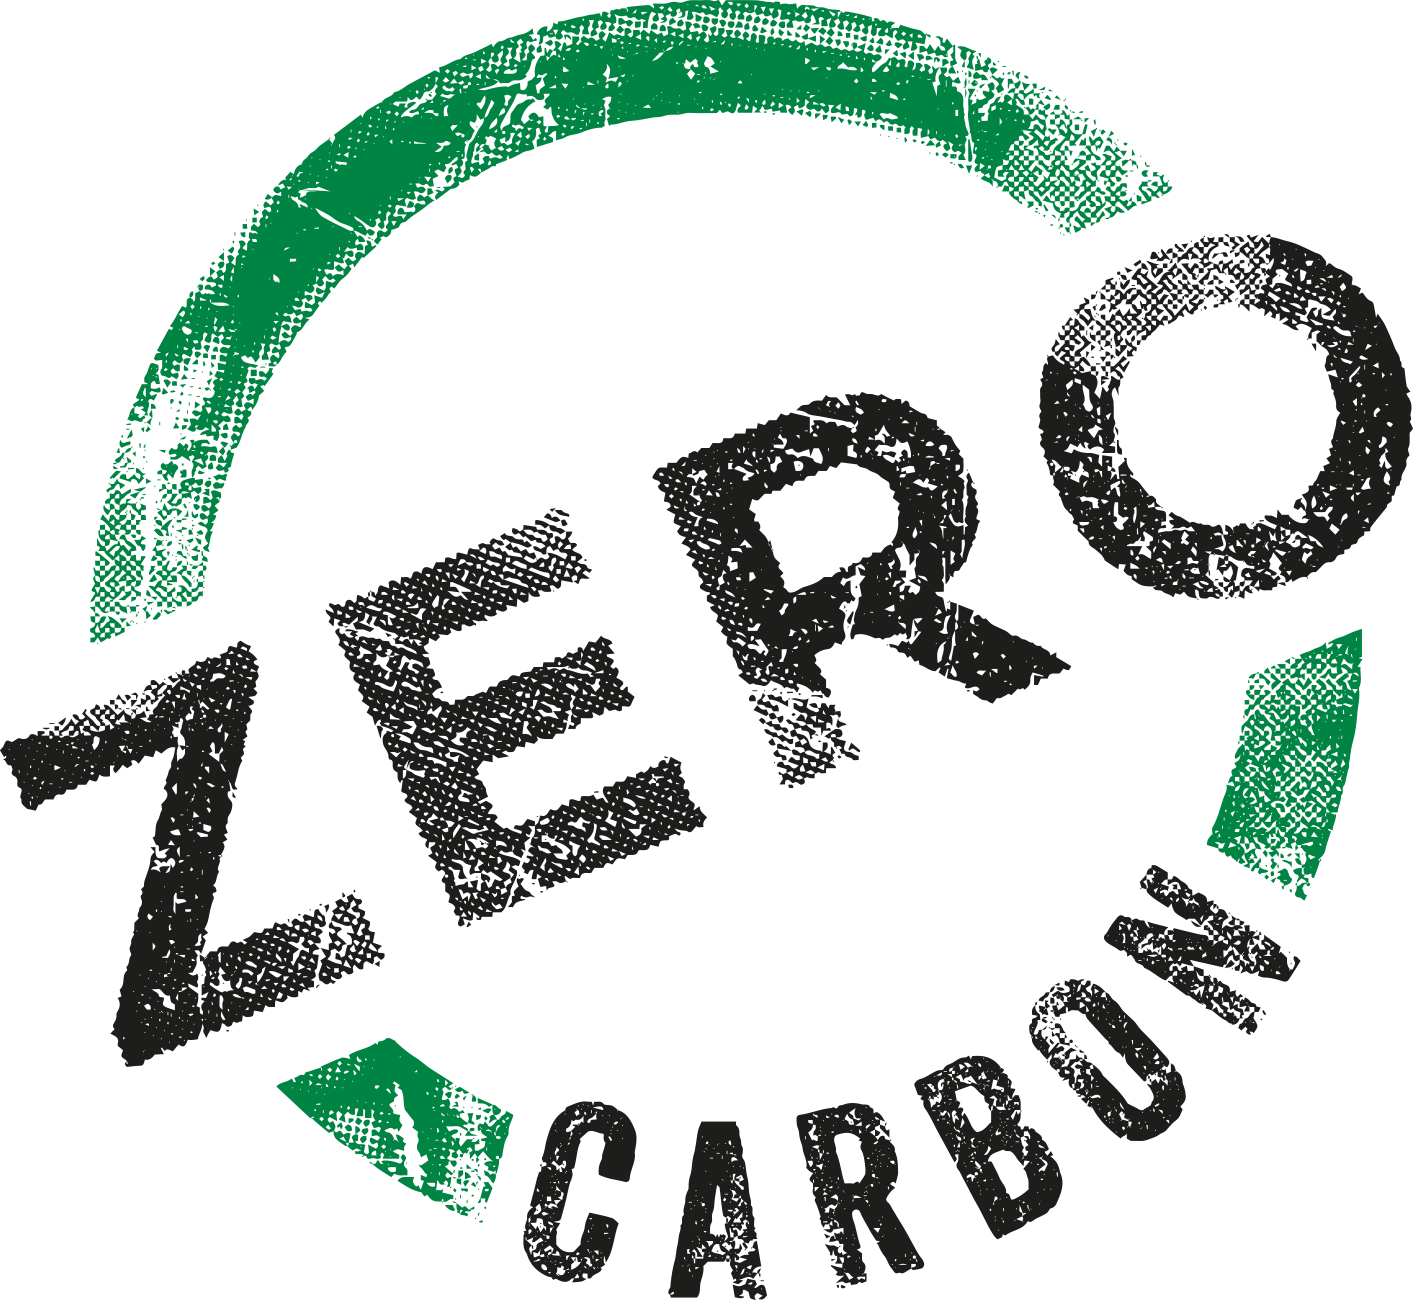 The Zero Carbon campaign